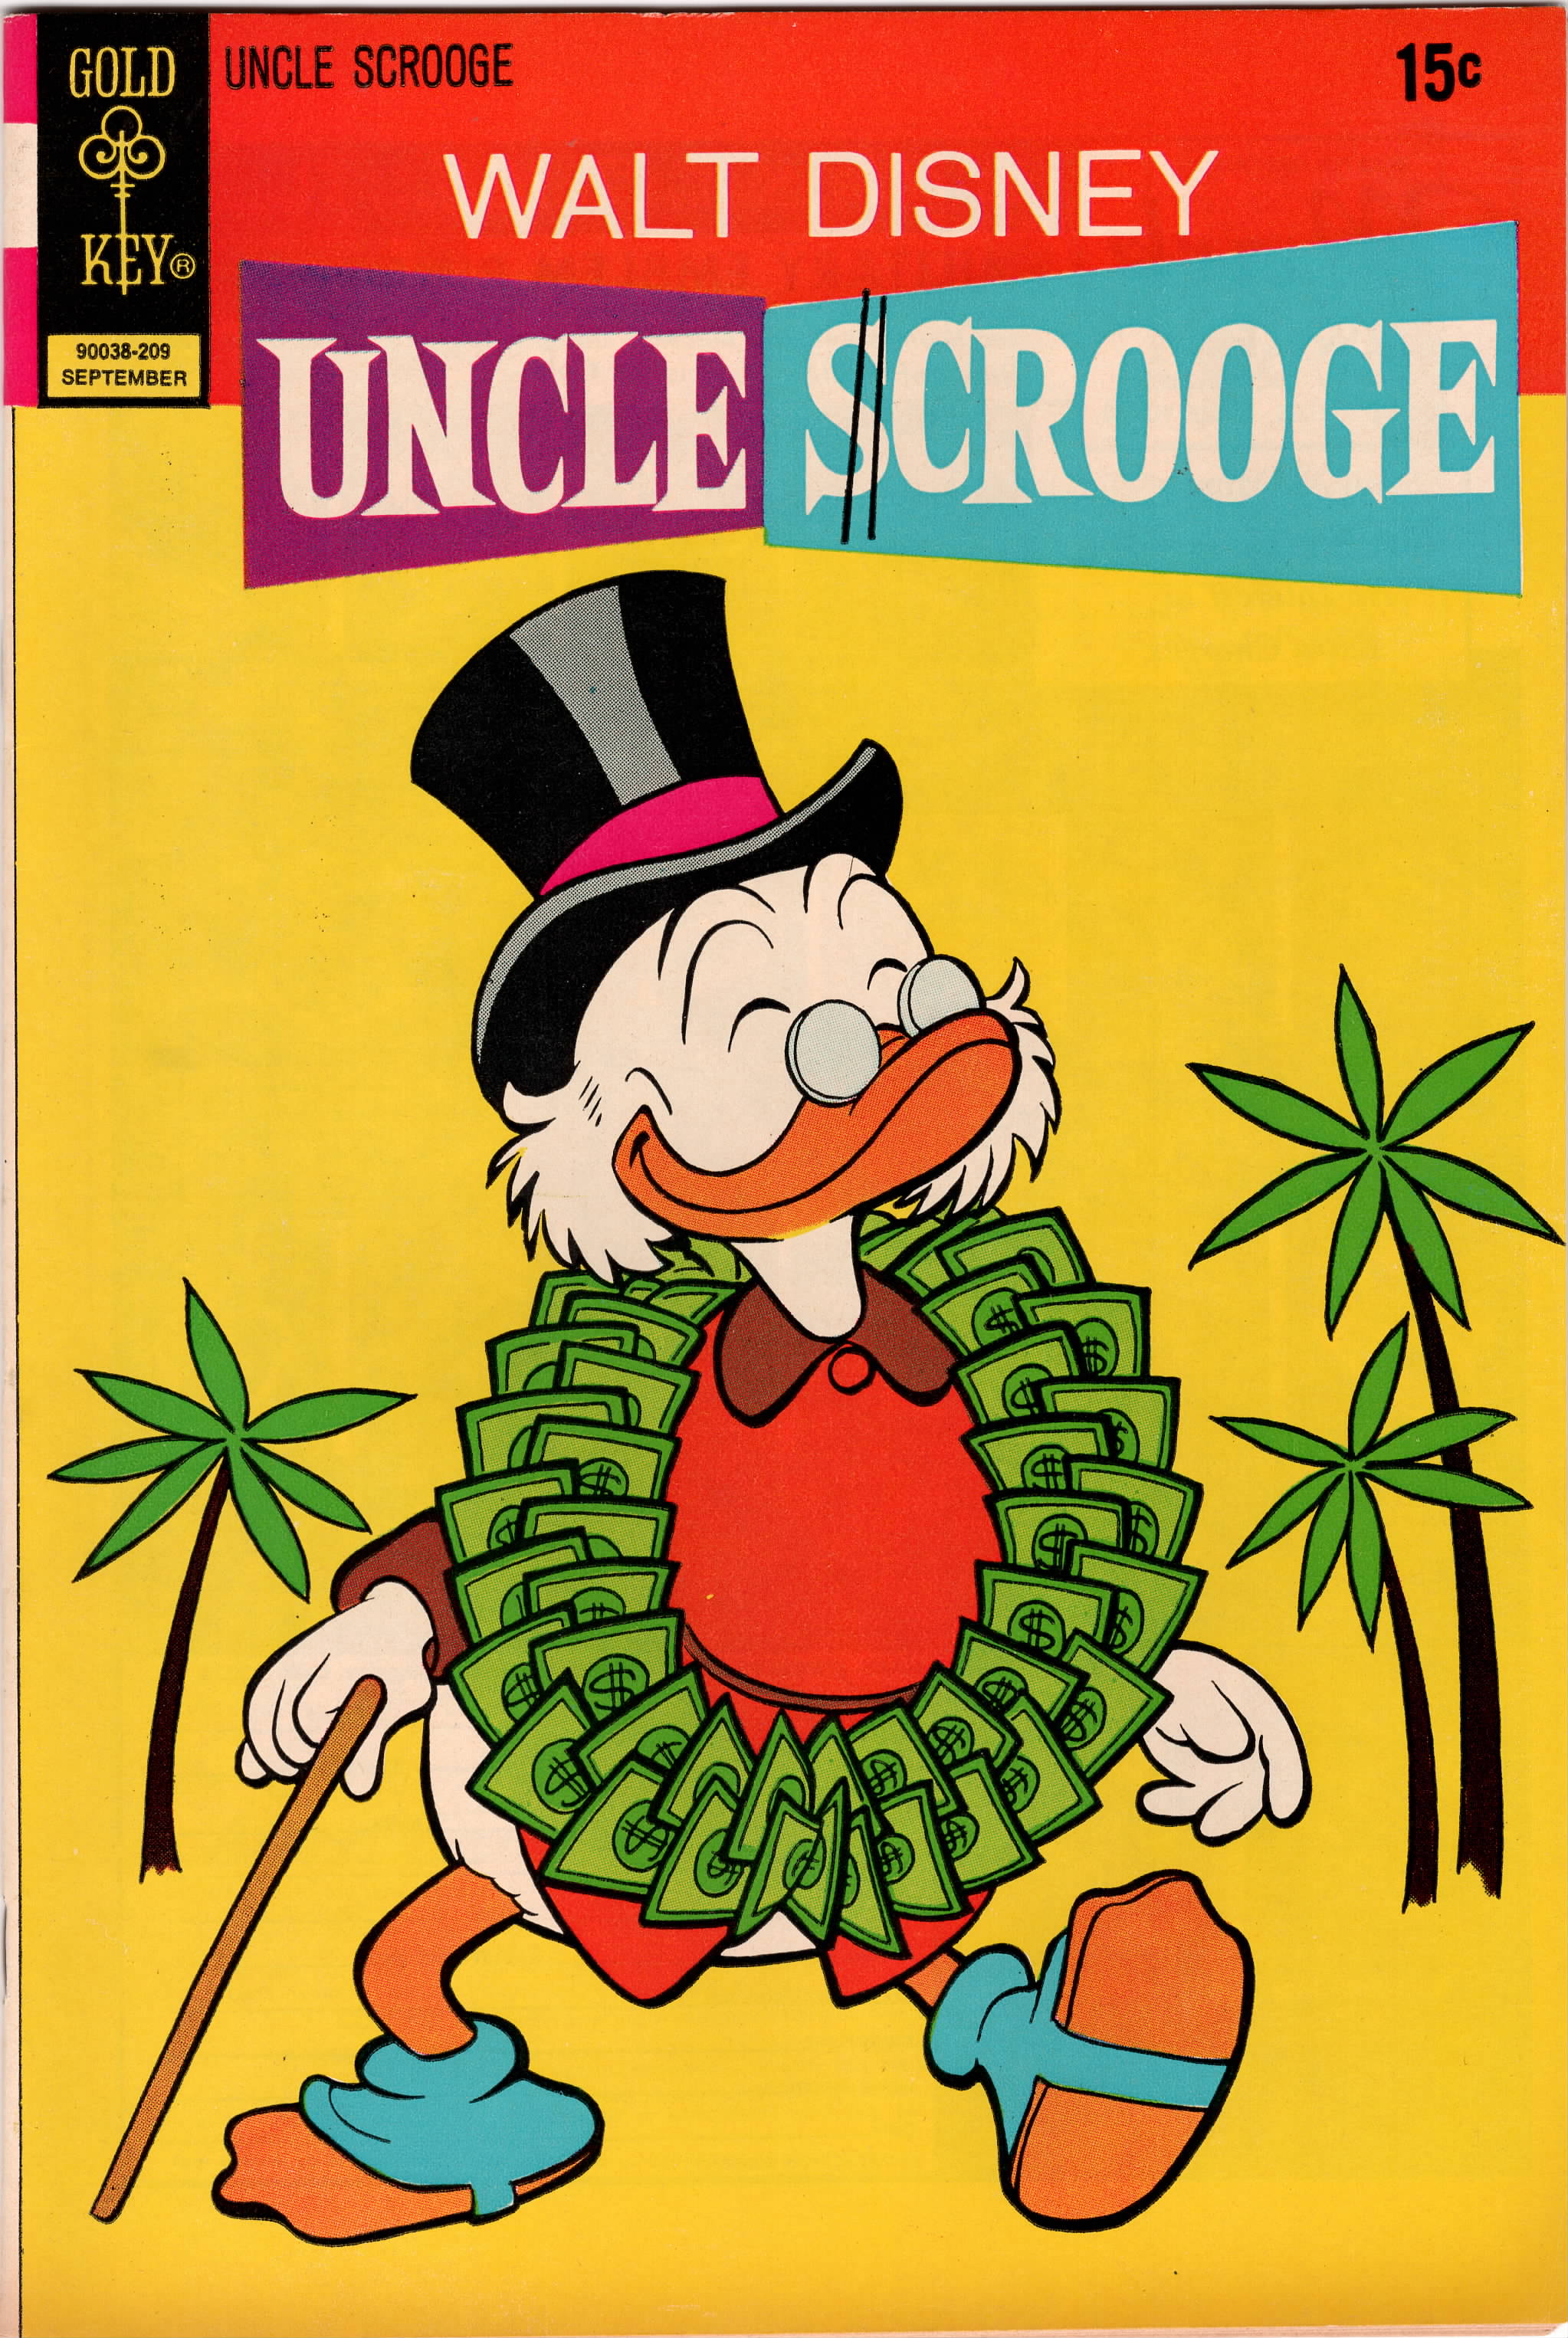 Uncle Scrooge #101